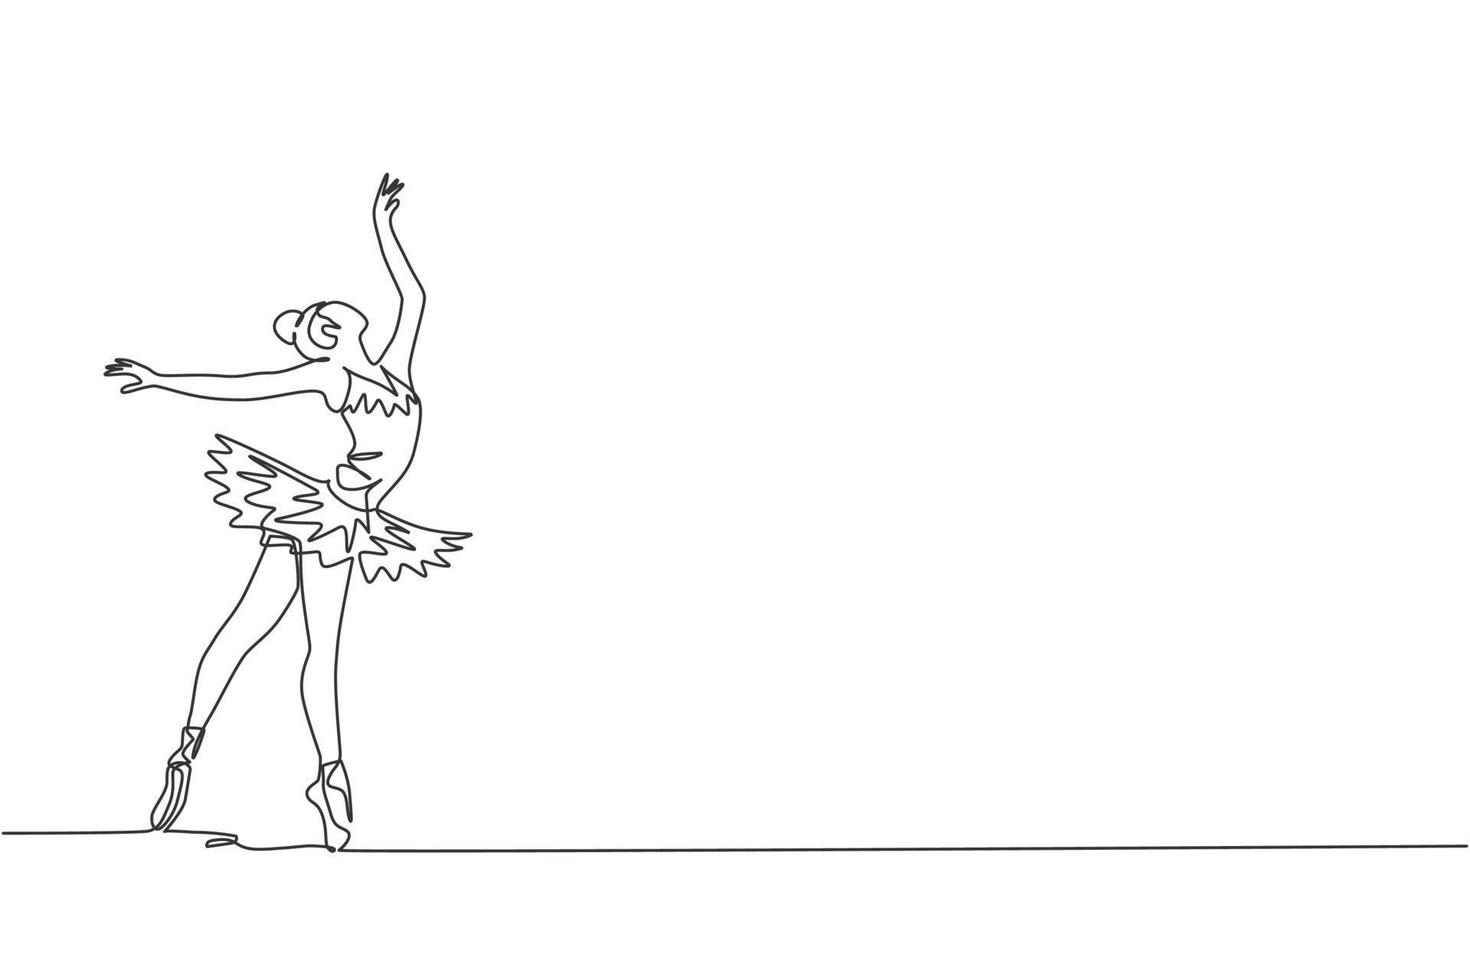 il disegno a linea continua di una giovane e graziosa ballerina ha dimostrato l'abilità di danza classica della coreografia di balletto. concetto di danza lirica. illustrazione vettoriale di design grafico di una linea alla moda di disegno